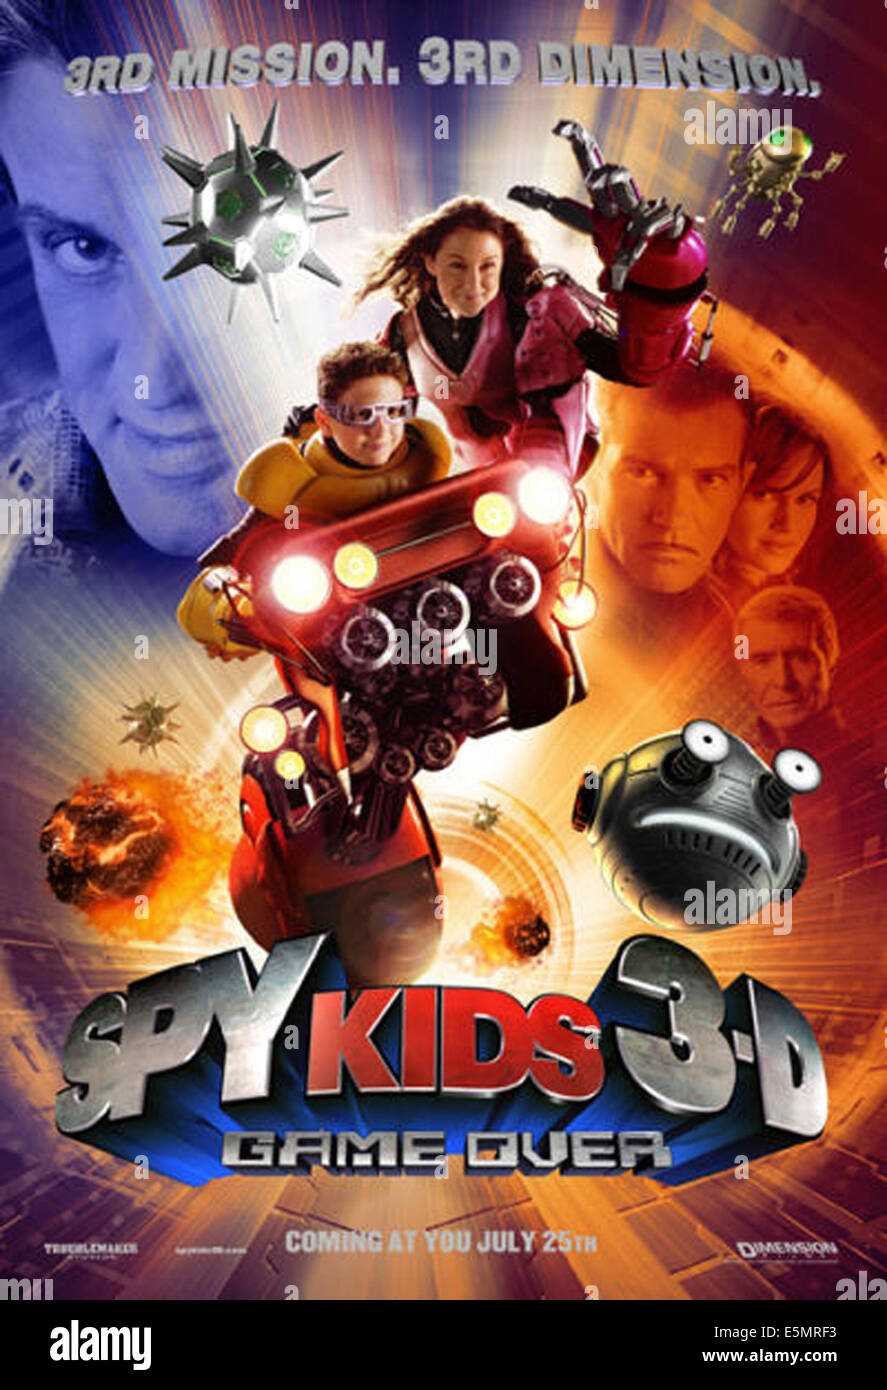 SPY KIDS 3-D : game over, l'affiche, 2003. (C)Dimension Films/avec la permission de : Everett Collection. Banque D'Images